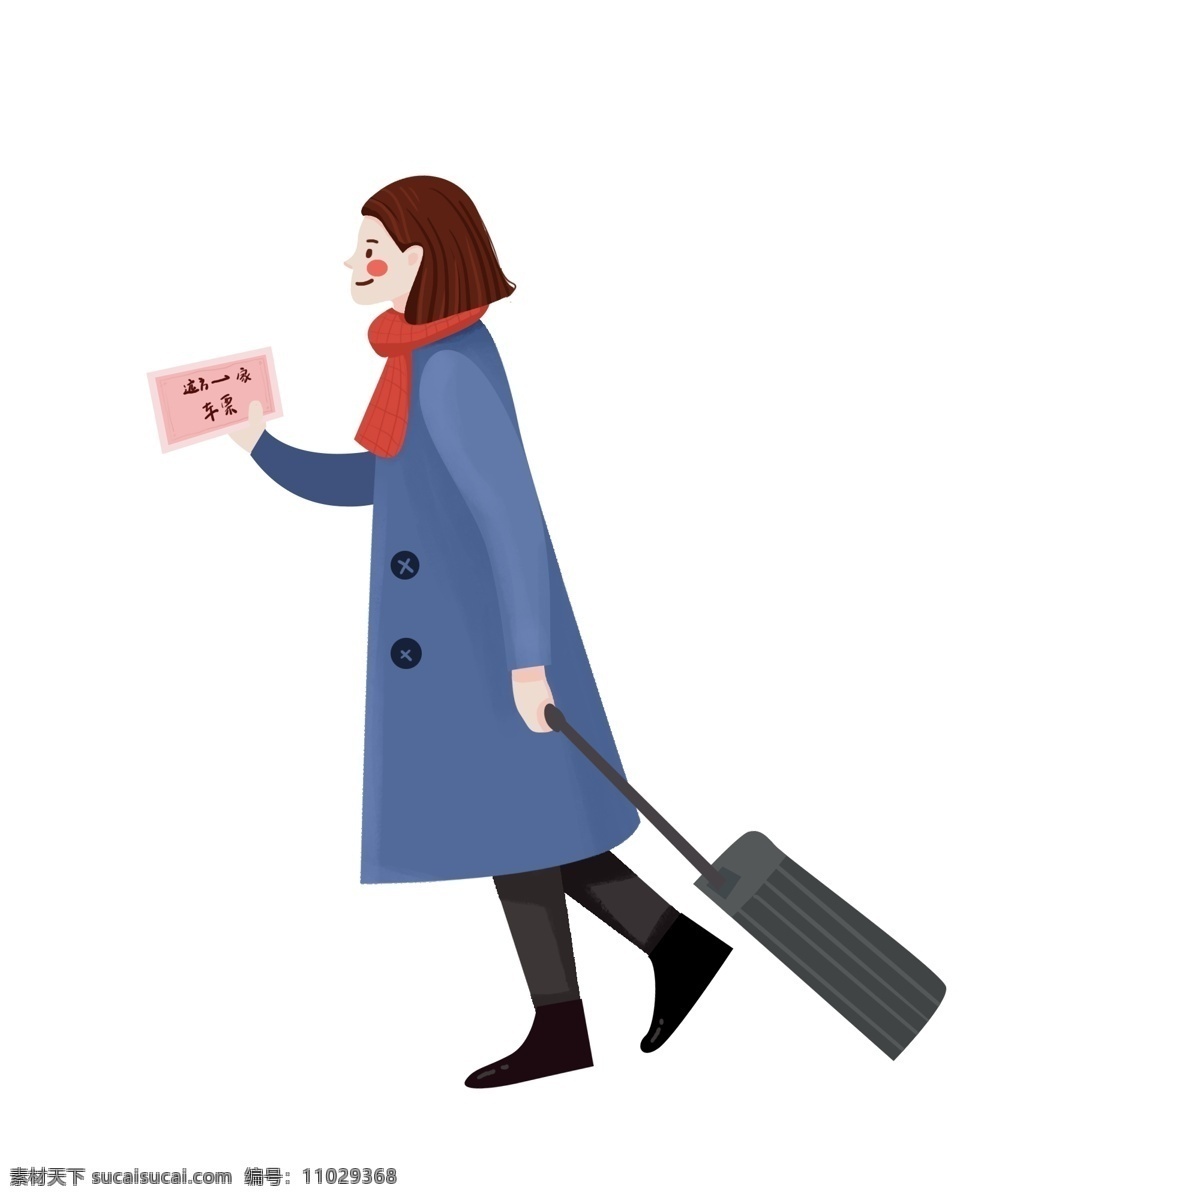 卡通 手绘 票 女人 商用 人物 插画 行李 女性